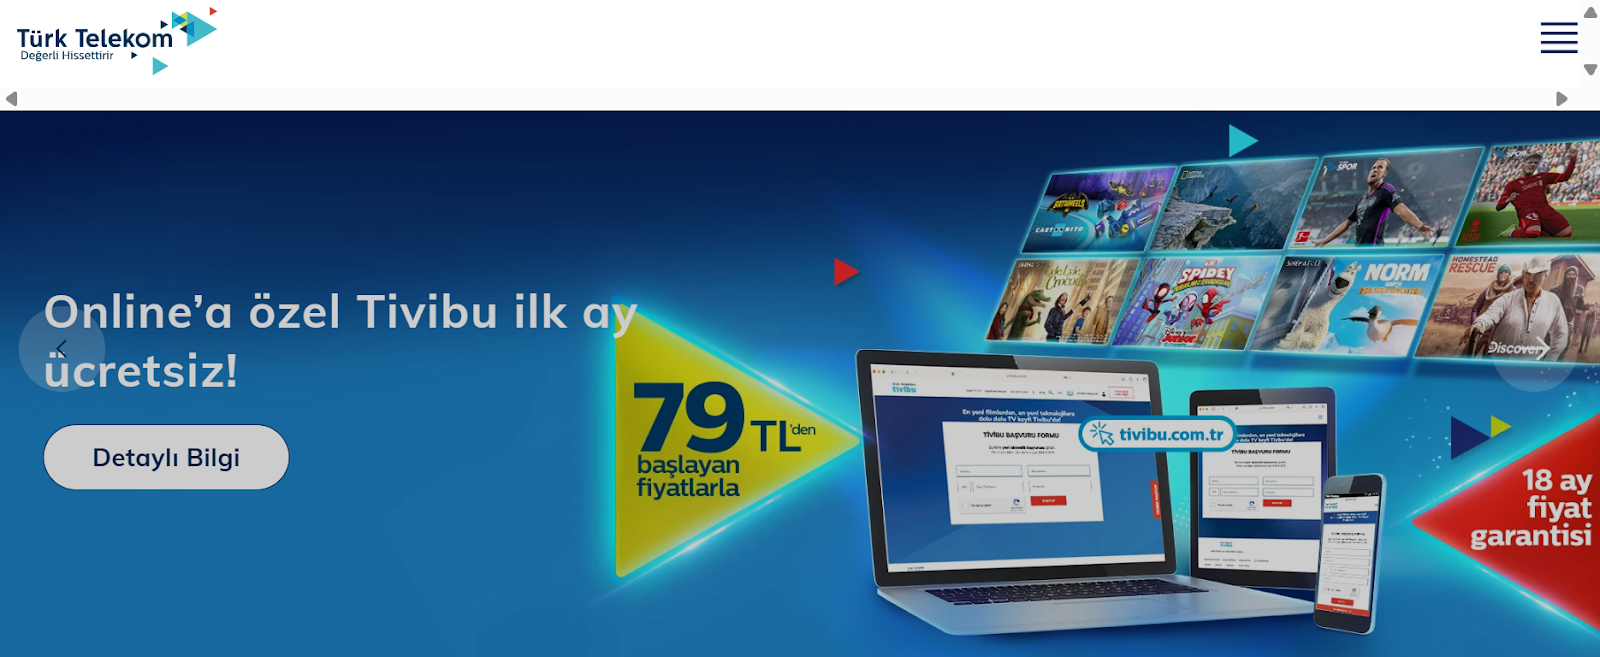 Türk Telekom website snapshot.